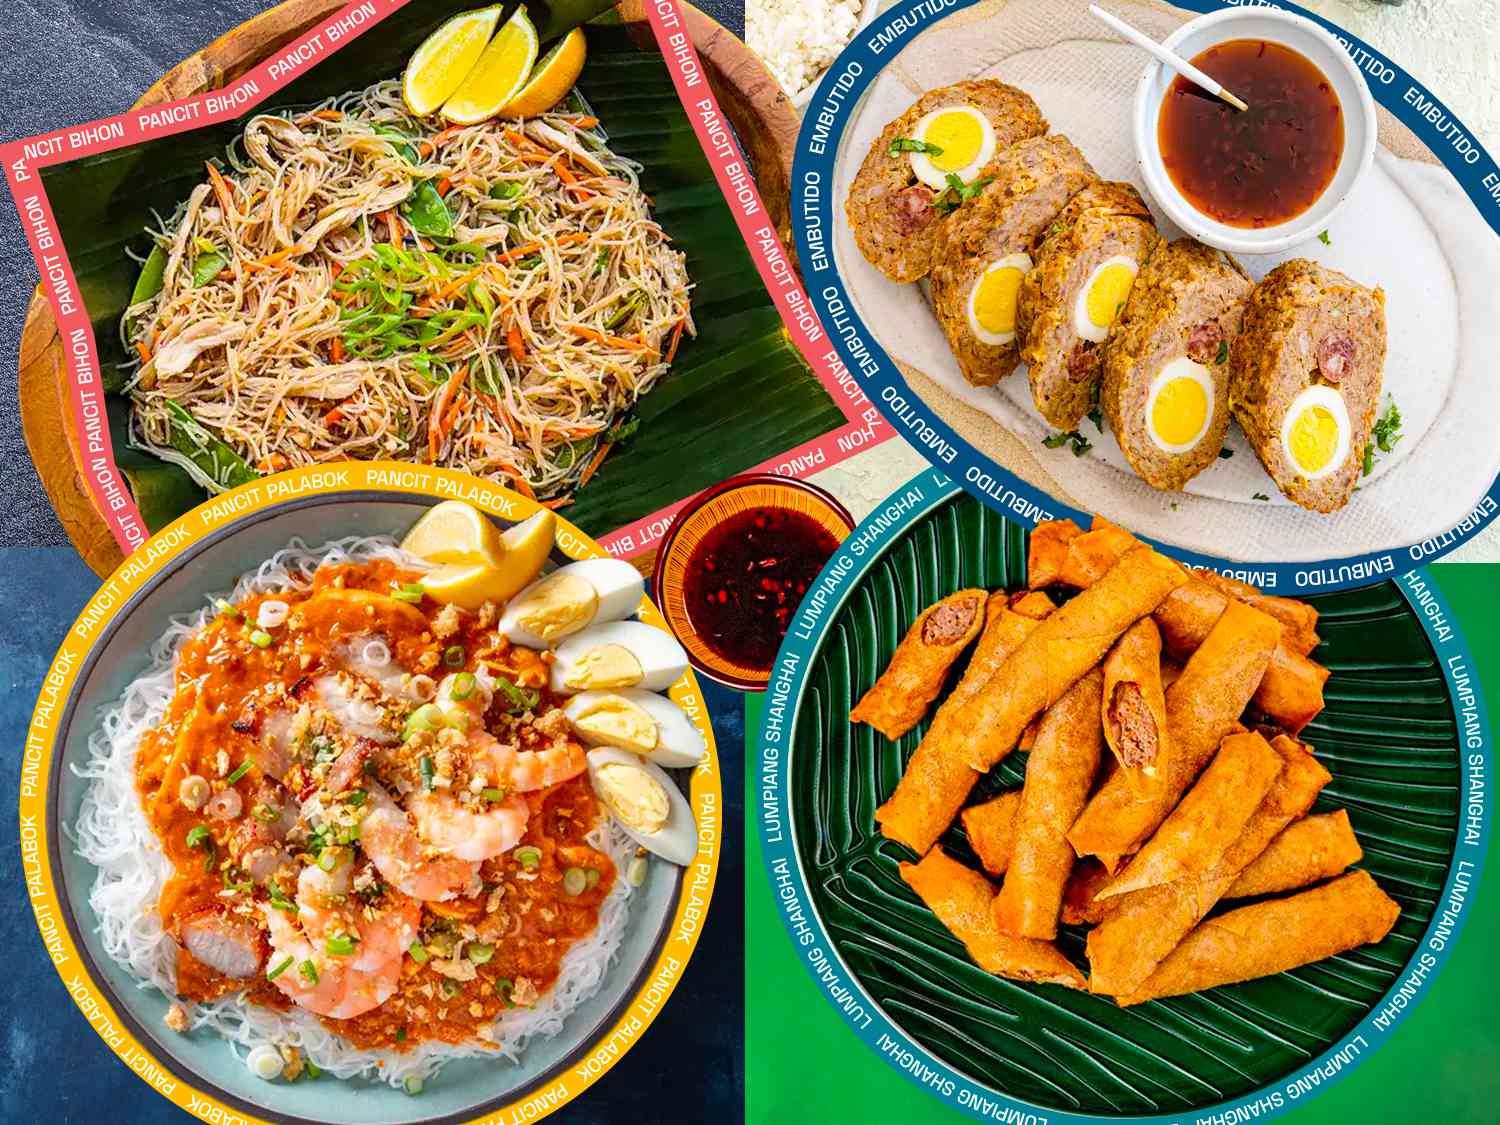 菲律宾节日菜肴的拼贴，每道菜的名字都有图形叠加